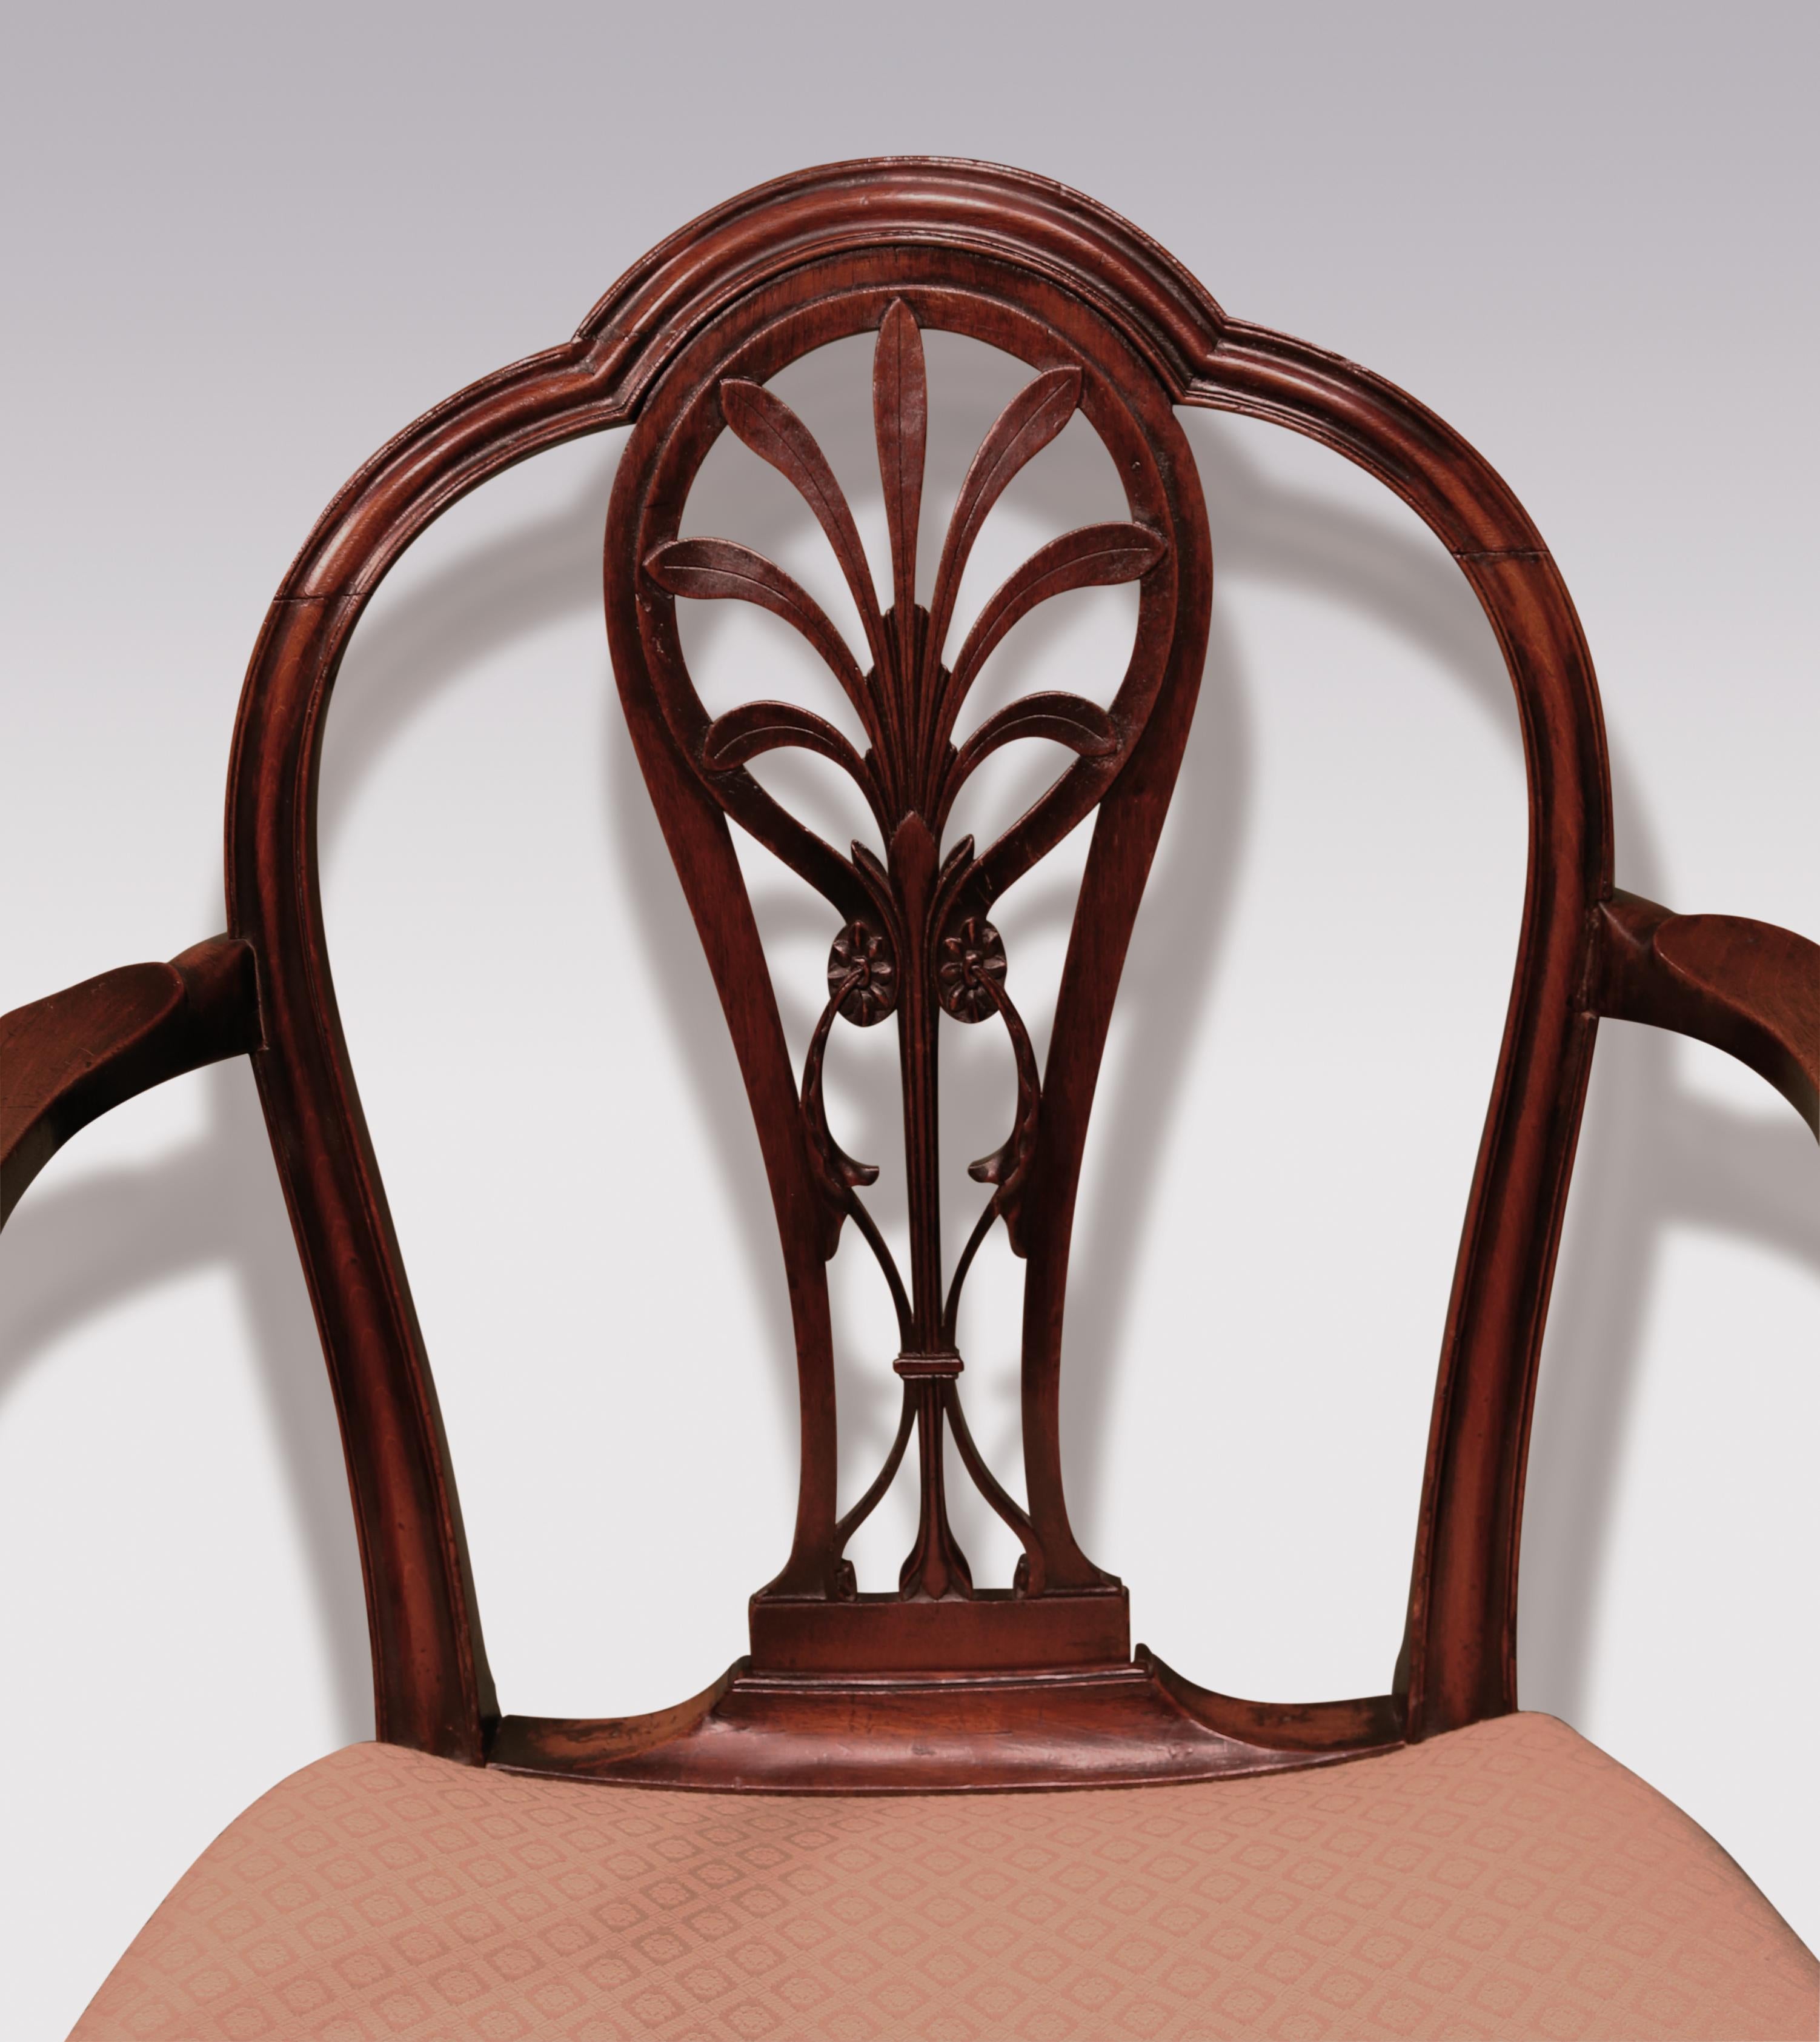 Ein Mahagoni-Sessel aus dem späten 18. Jahrhundert aus der Zeit Georgs III., mit doppelter gewölbter Rückenlehne über einem zentralen Balken, fein geschnitzt mit Anthemion-Paterae und Akanthus. Der Stuhl hat wohlgeformte und geformte, zurückgesetzte